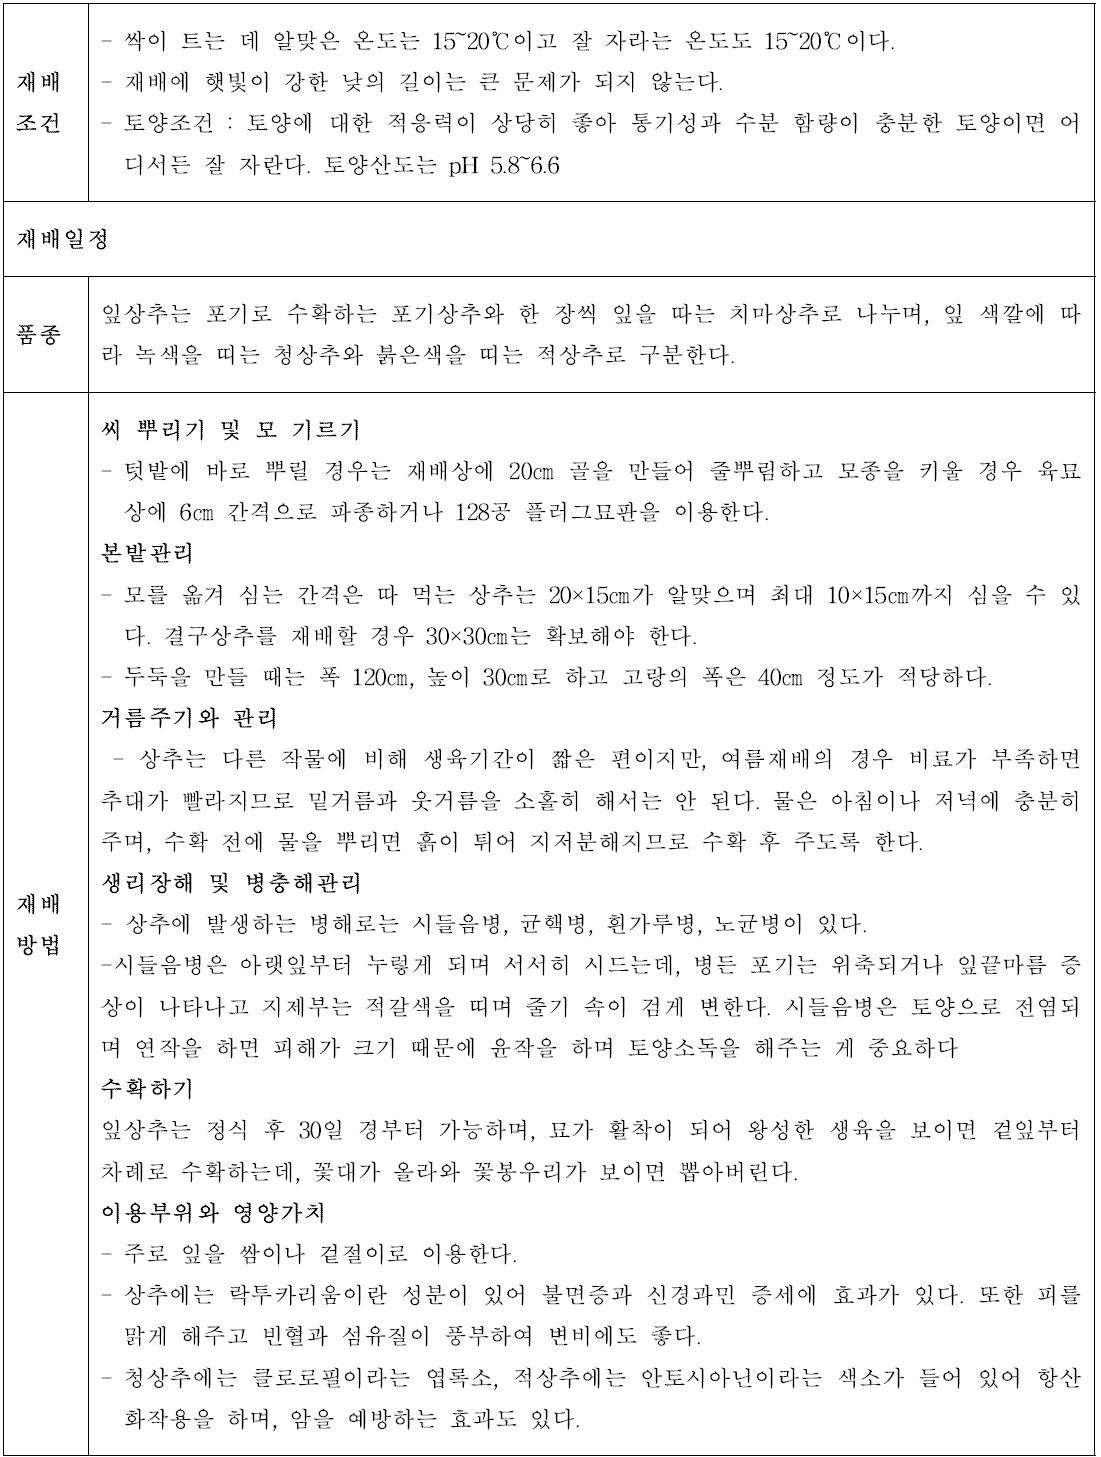 농사기술정보 원고안–상추(예시)